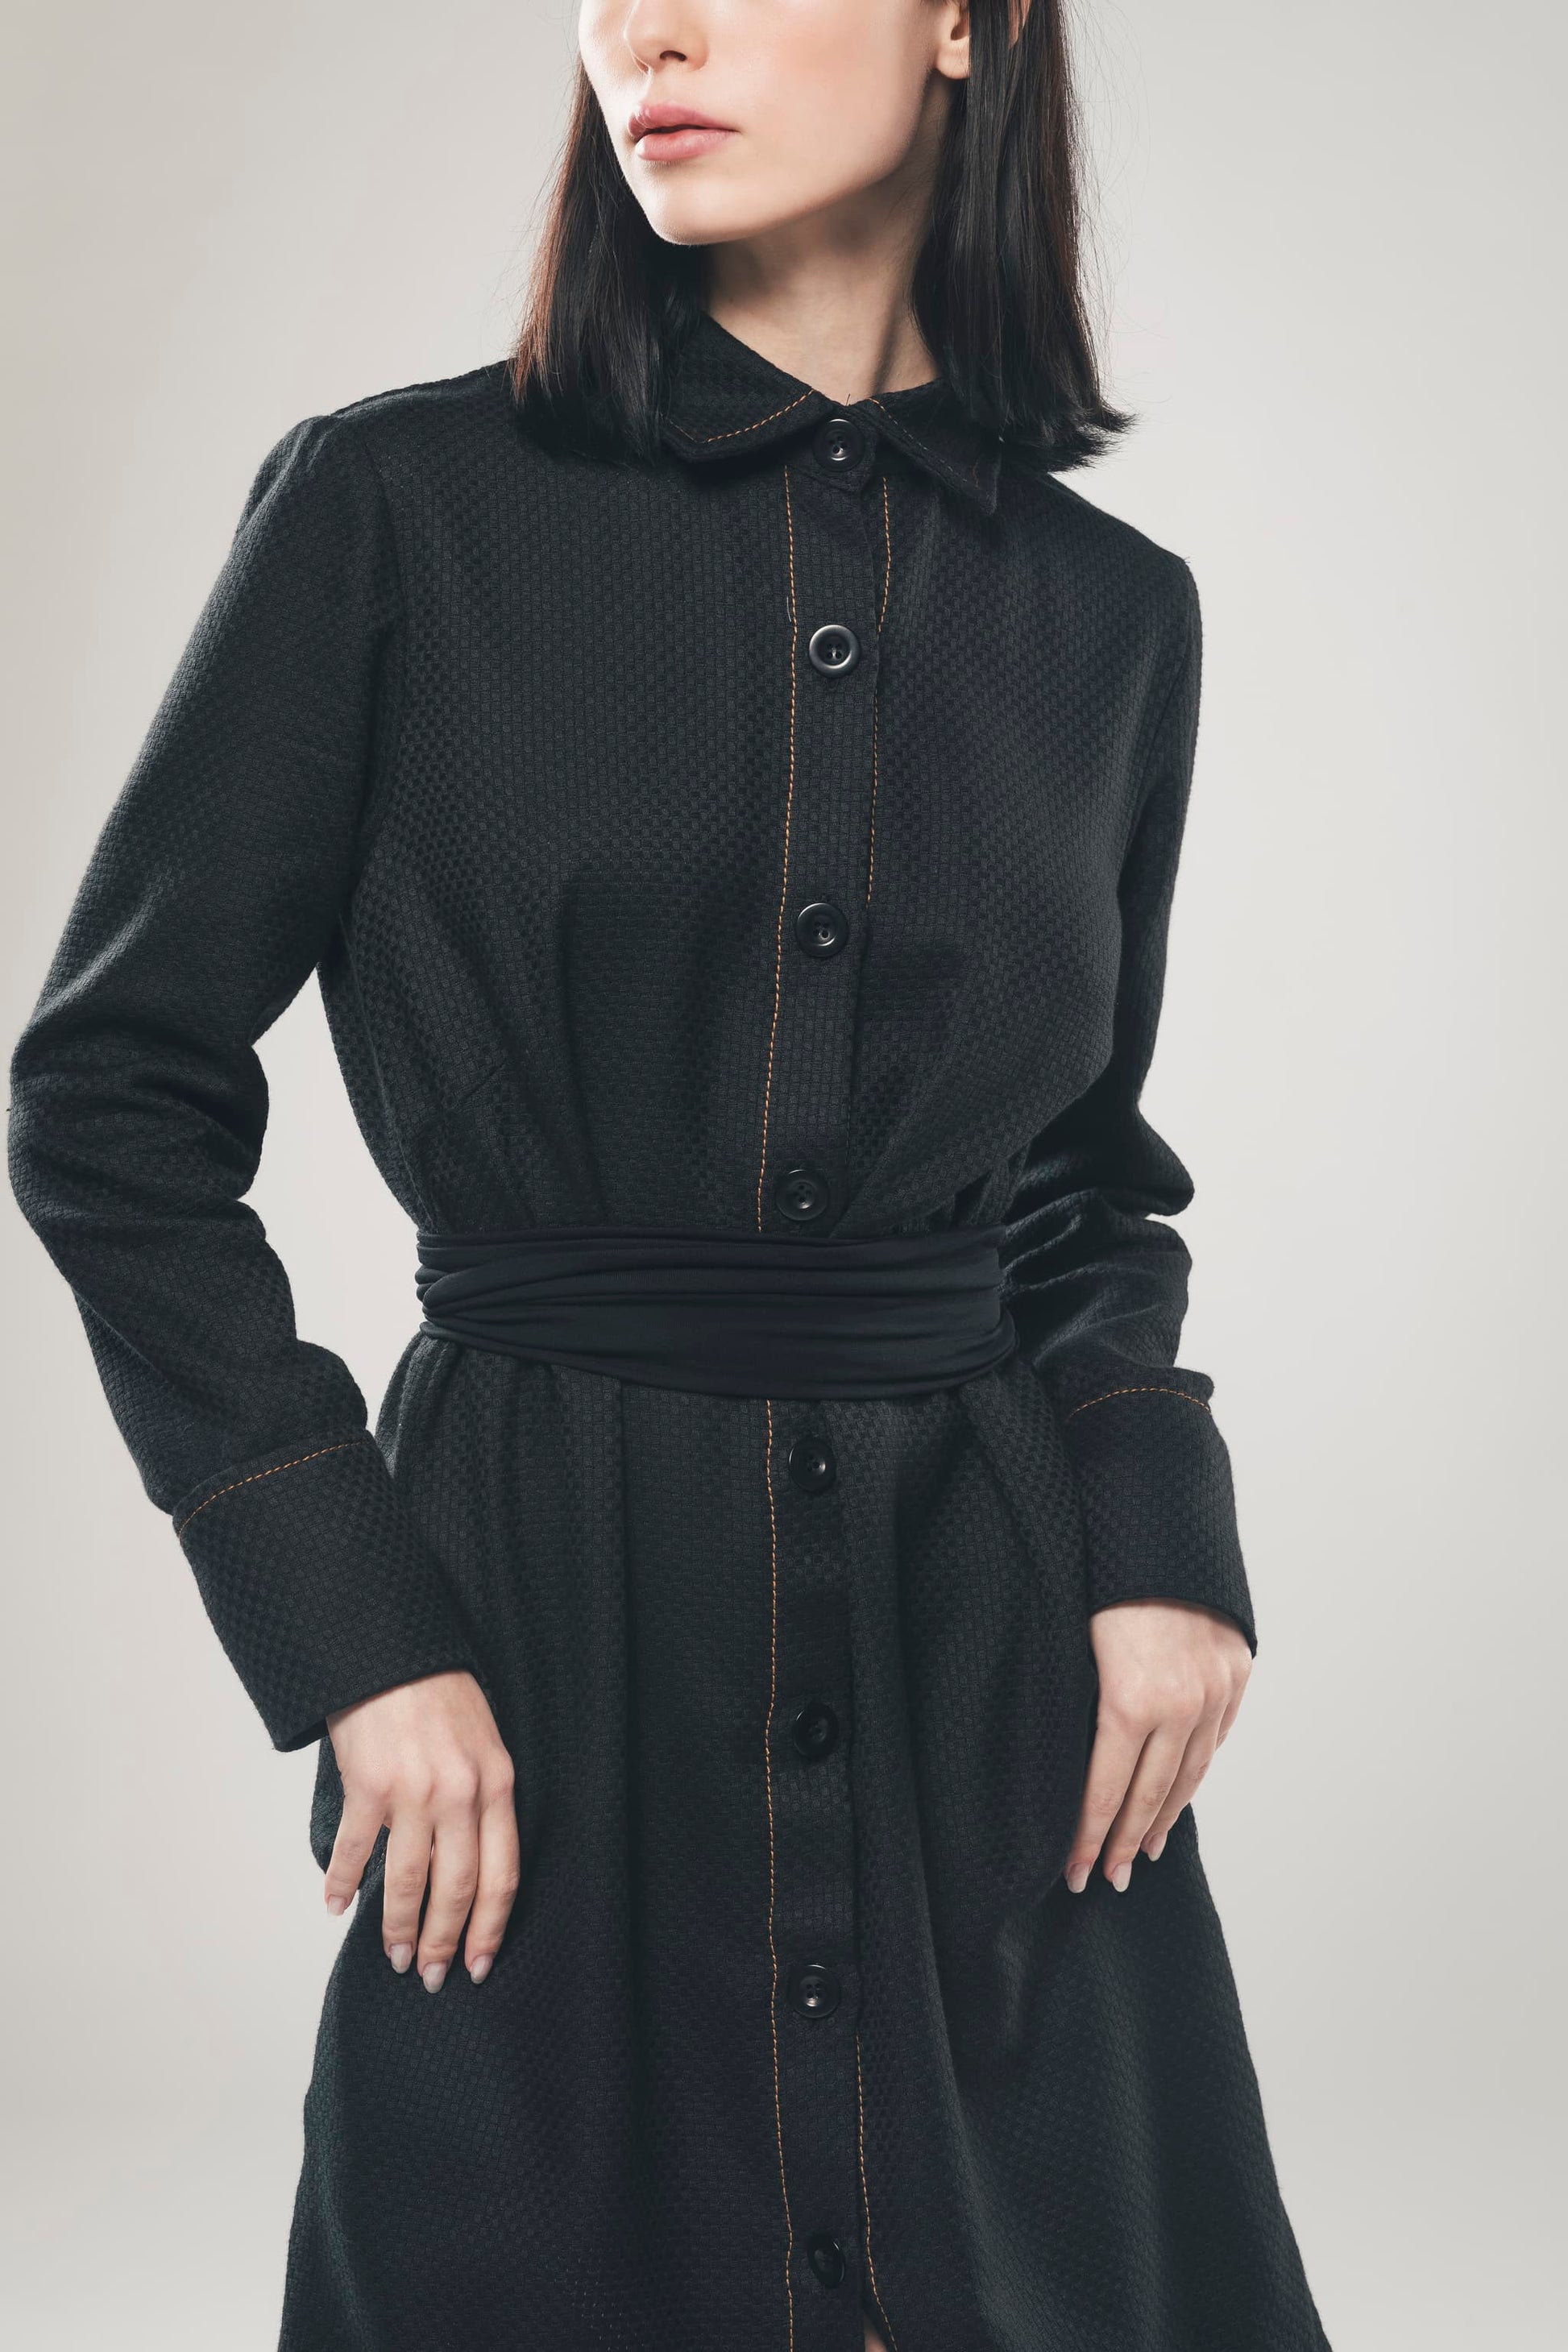 Imagen de vestido camisero negro de comercio justo con bolsillos de algodón orgánico de Organique. 